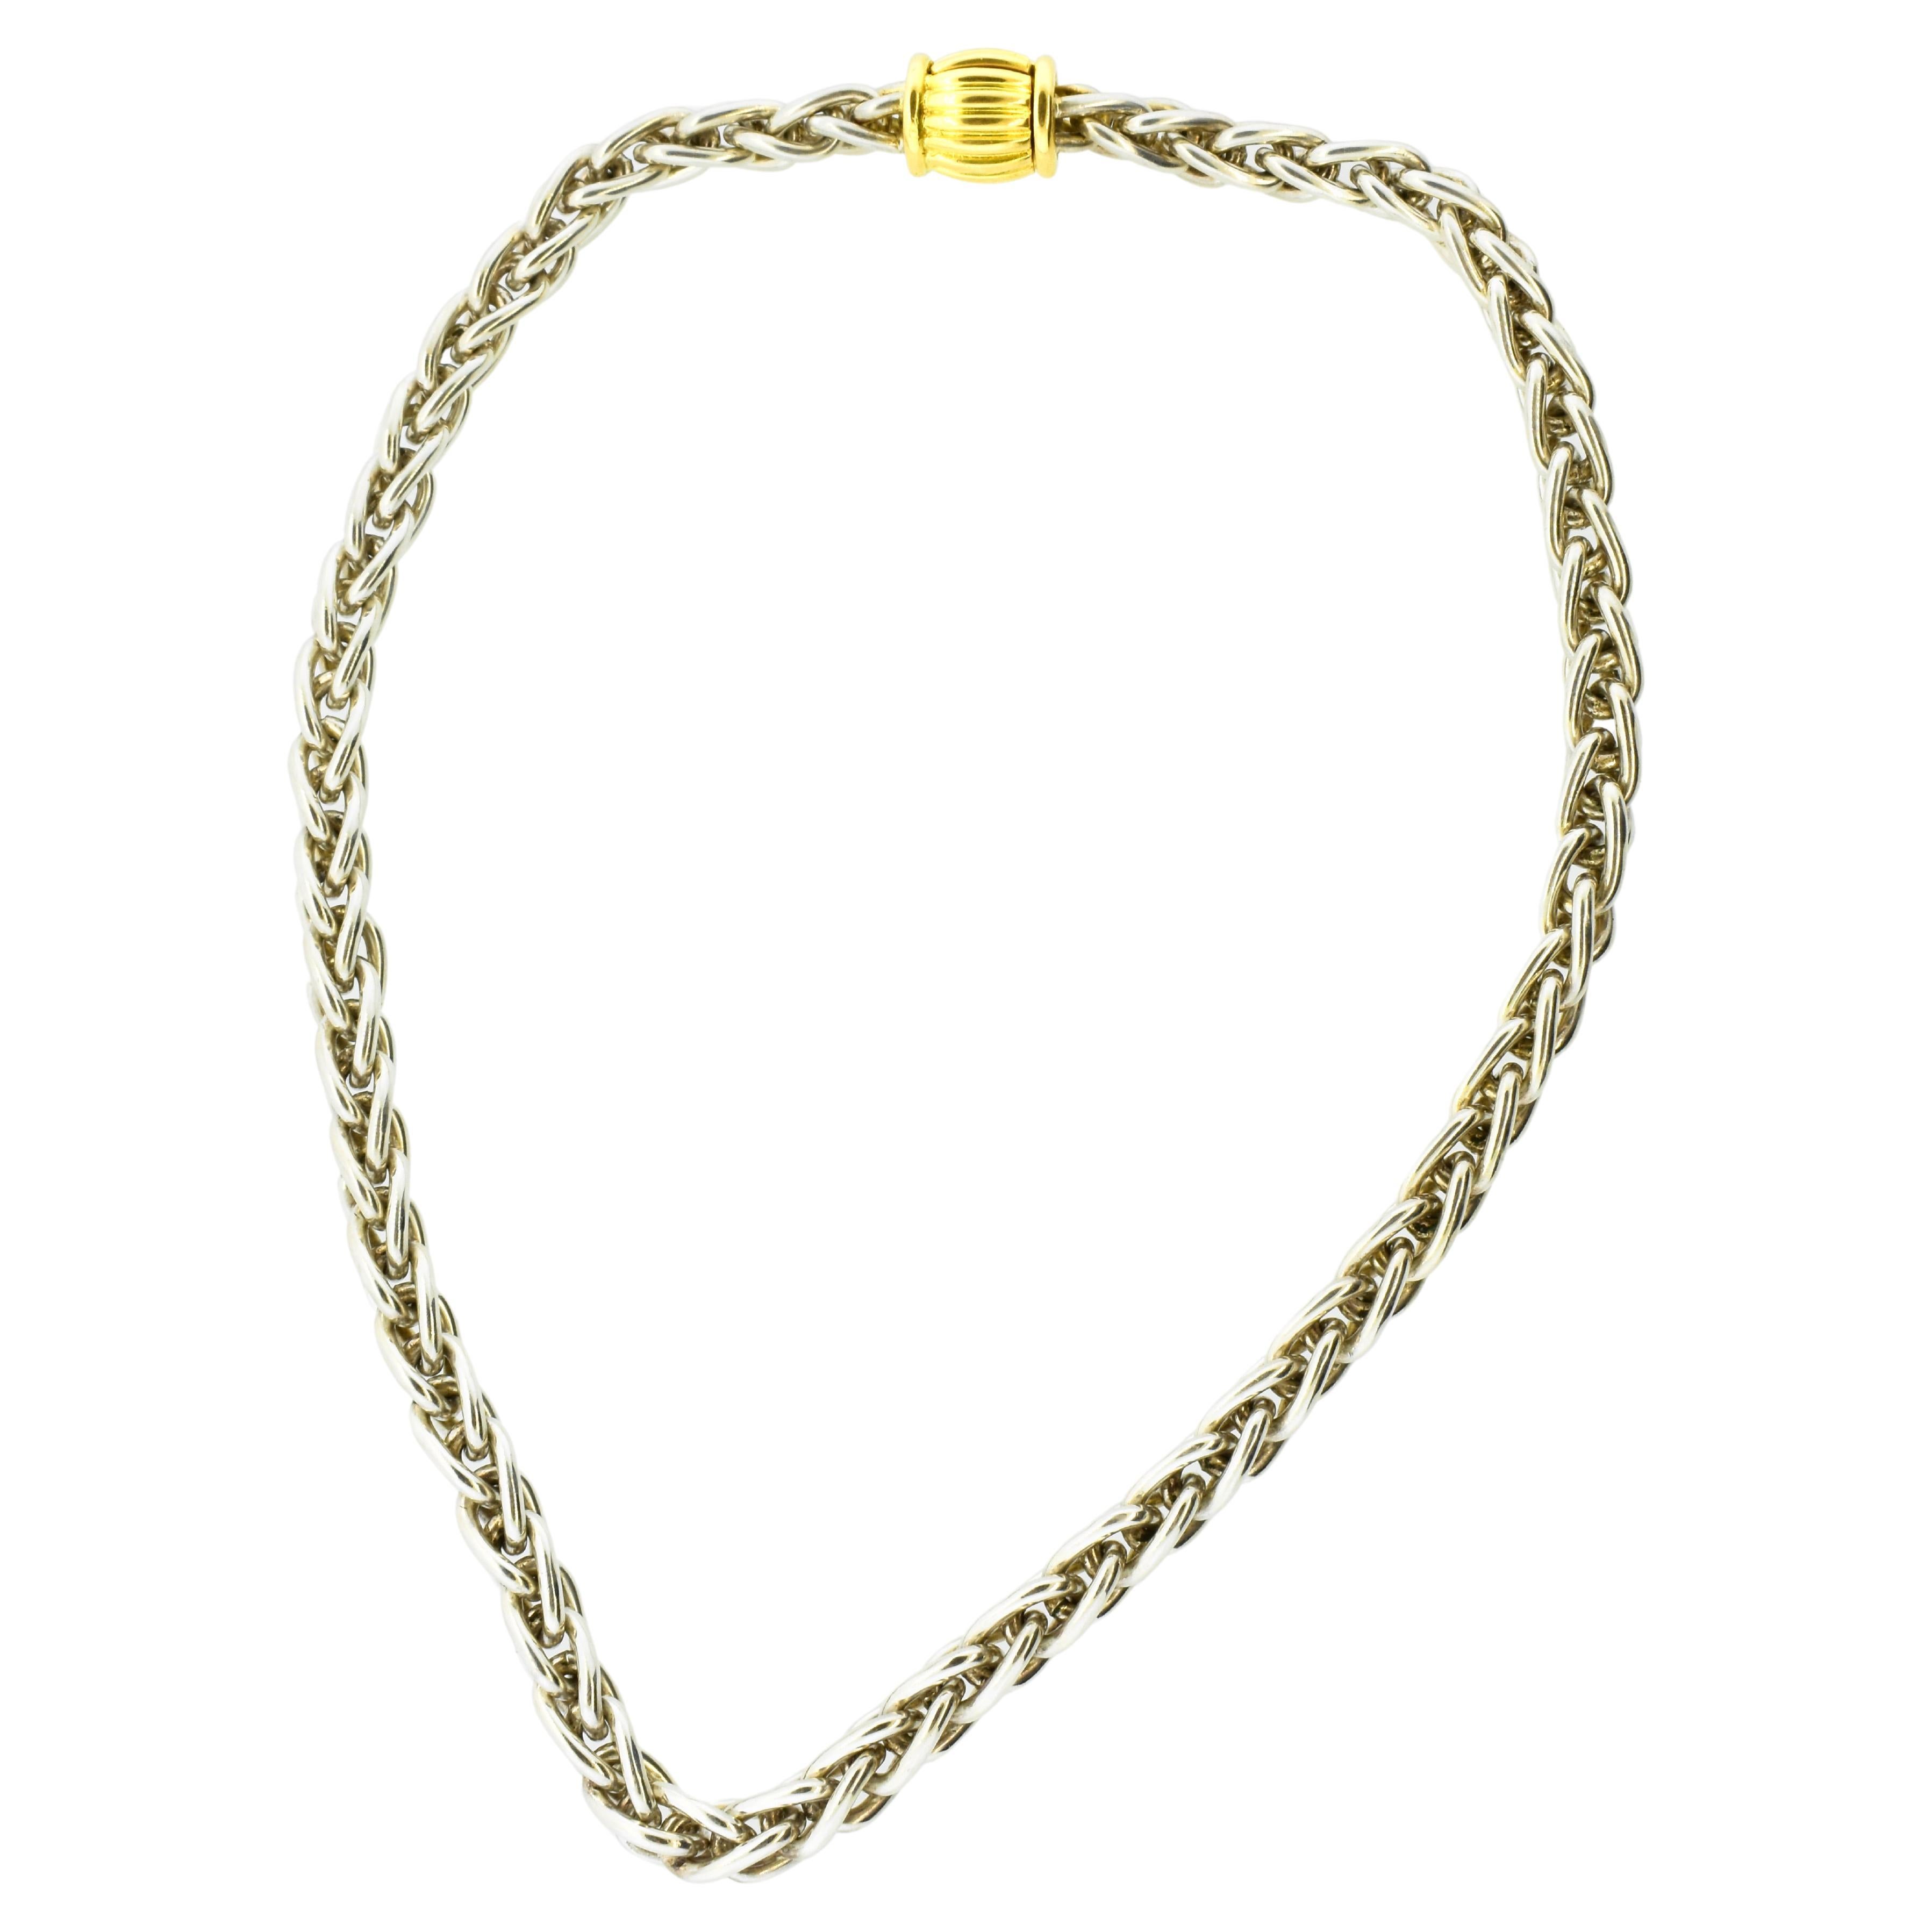 Hermes Paris 18K Gelbgold und Sterlingsilber Vintage Halskette.  Diese besondere Halskette ist heute nur noch selten zu finden.  Die 18K stilisierten Barrel Verschluss ist groß und robust, die Sterling Silber, 925, Kette ist eine komplexe